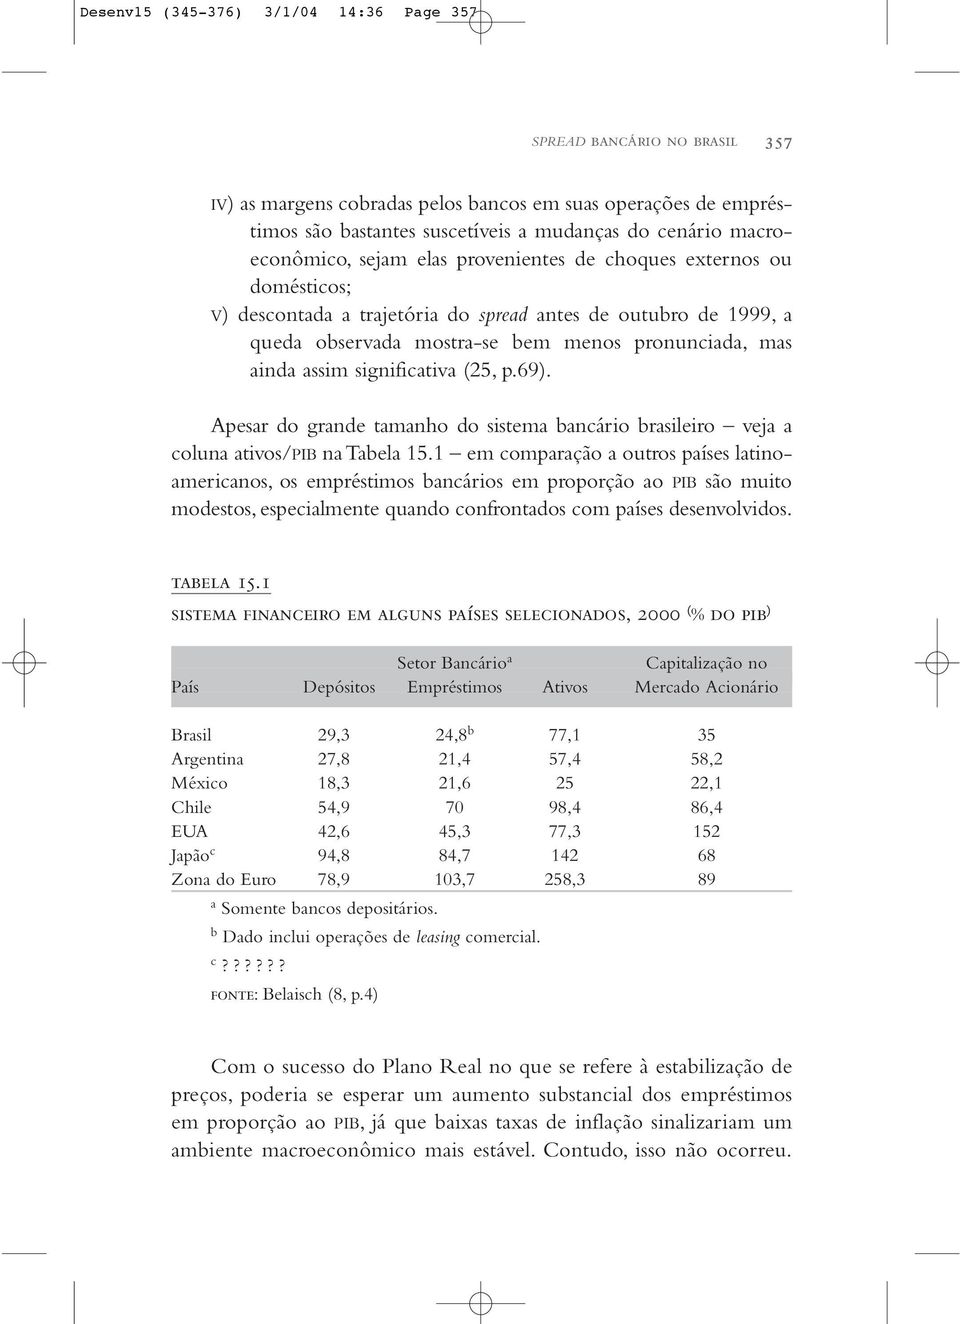 assim significativa (25, p.69). Apesar do grande tamanho do sistema bancário brasileiro veja a coluna ativos/pib na Tabela 15.